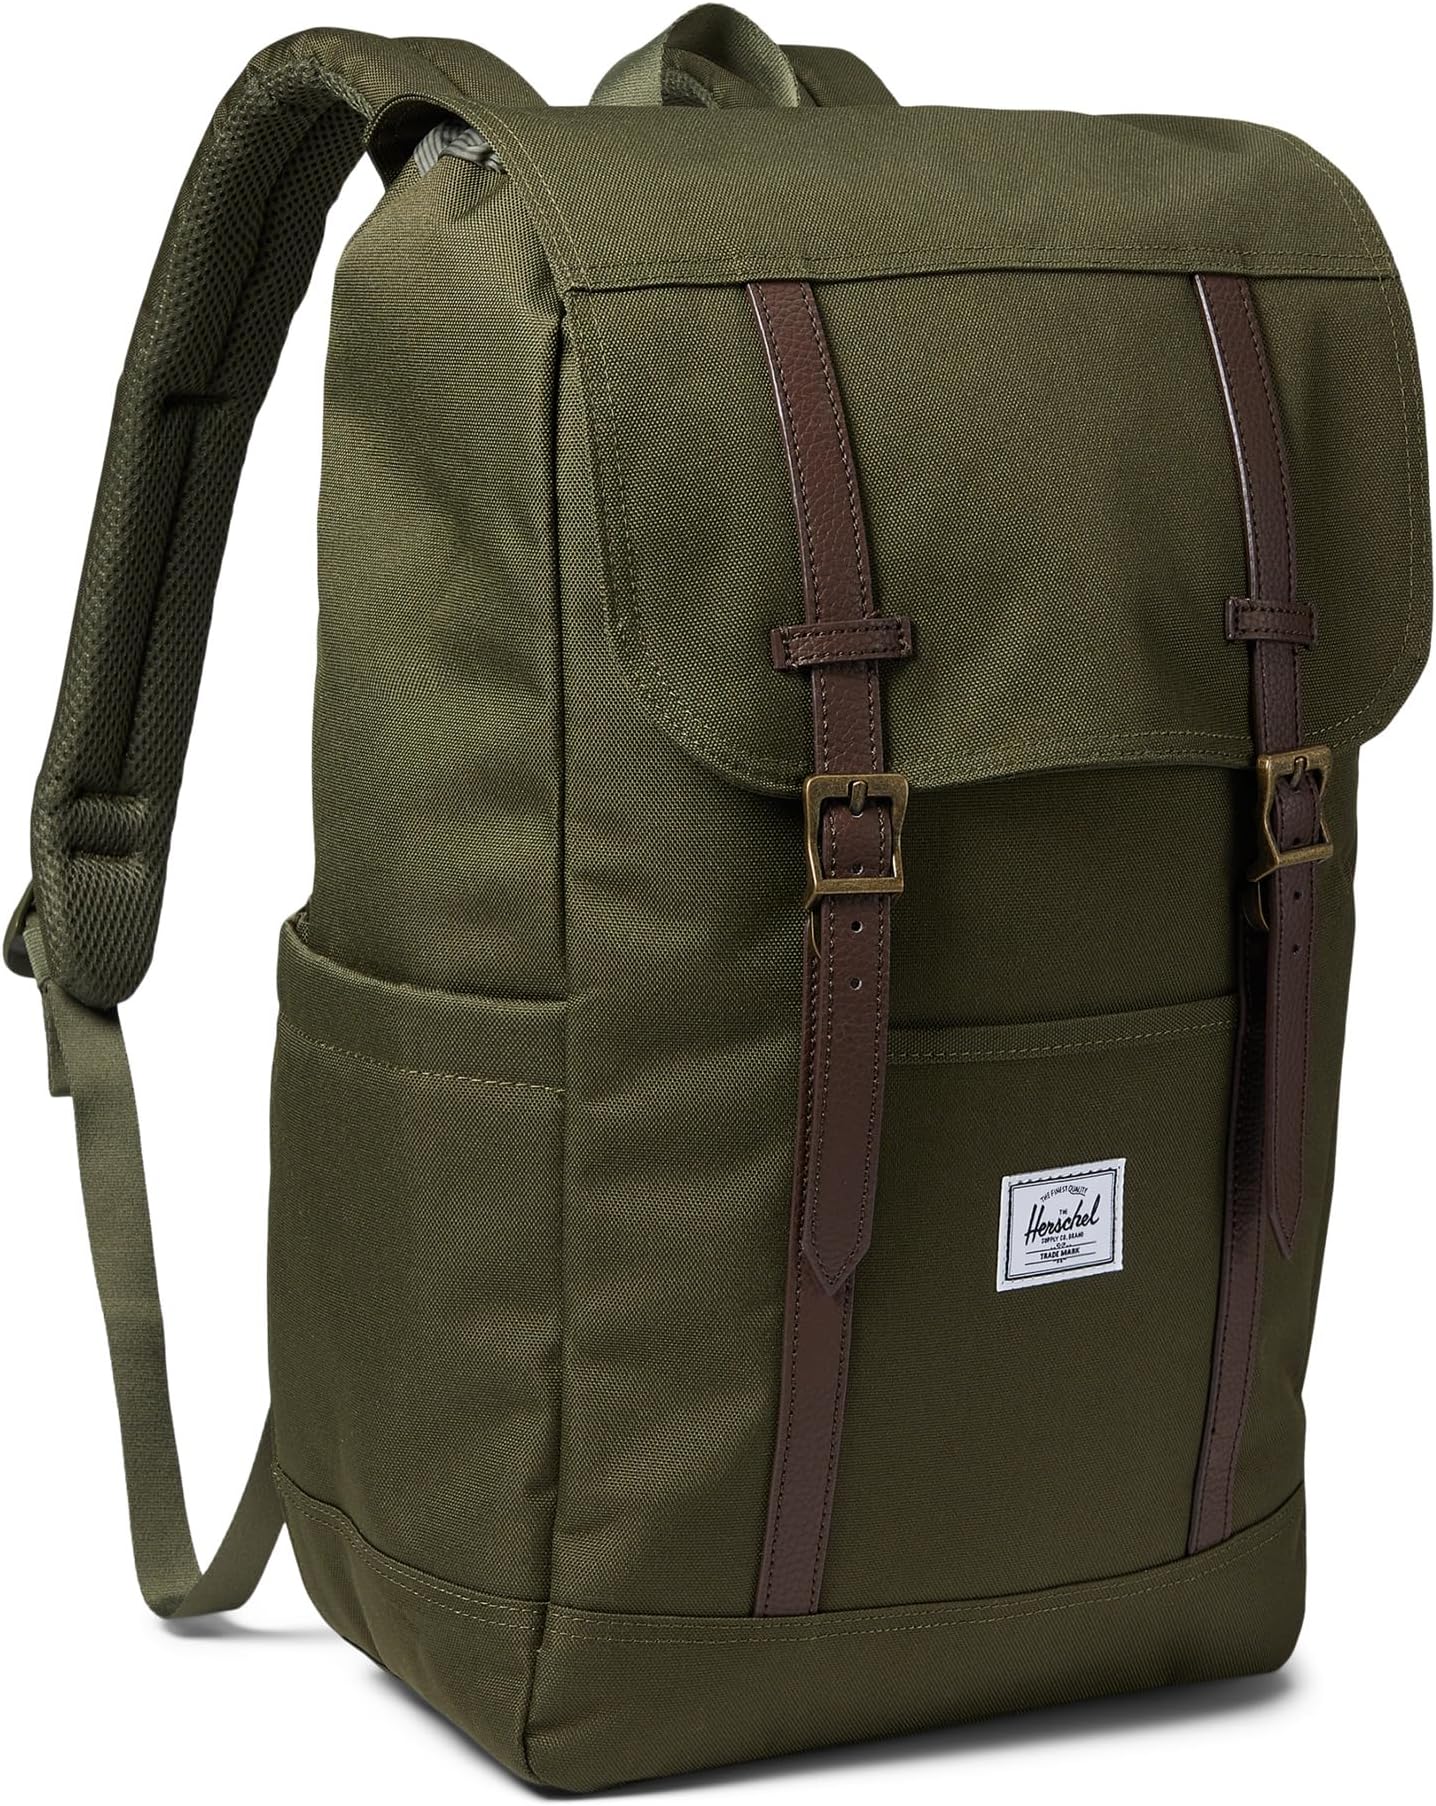 сумка novel herschel supply co цвет ivy green Рюкзак Retreat Backpack Herschel Supply Co., цвет Ivy Green